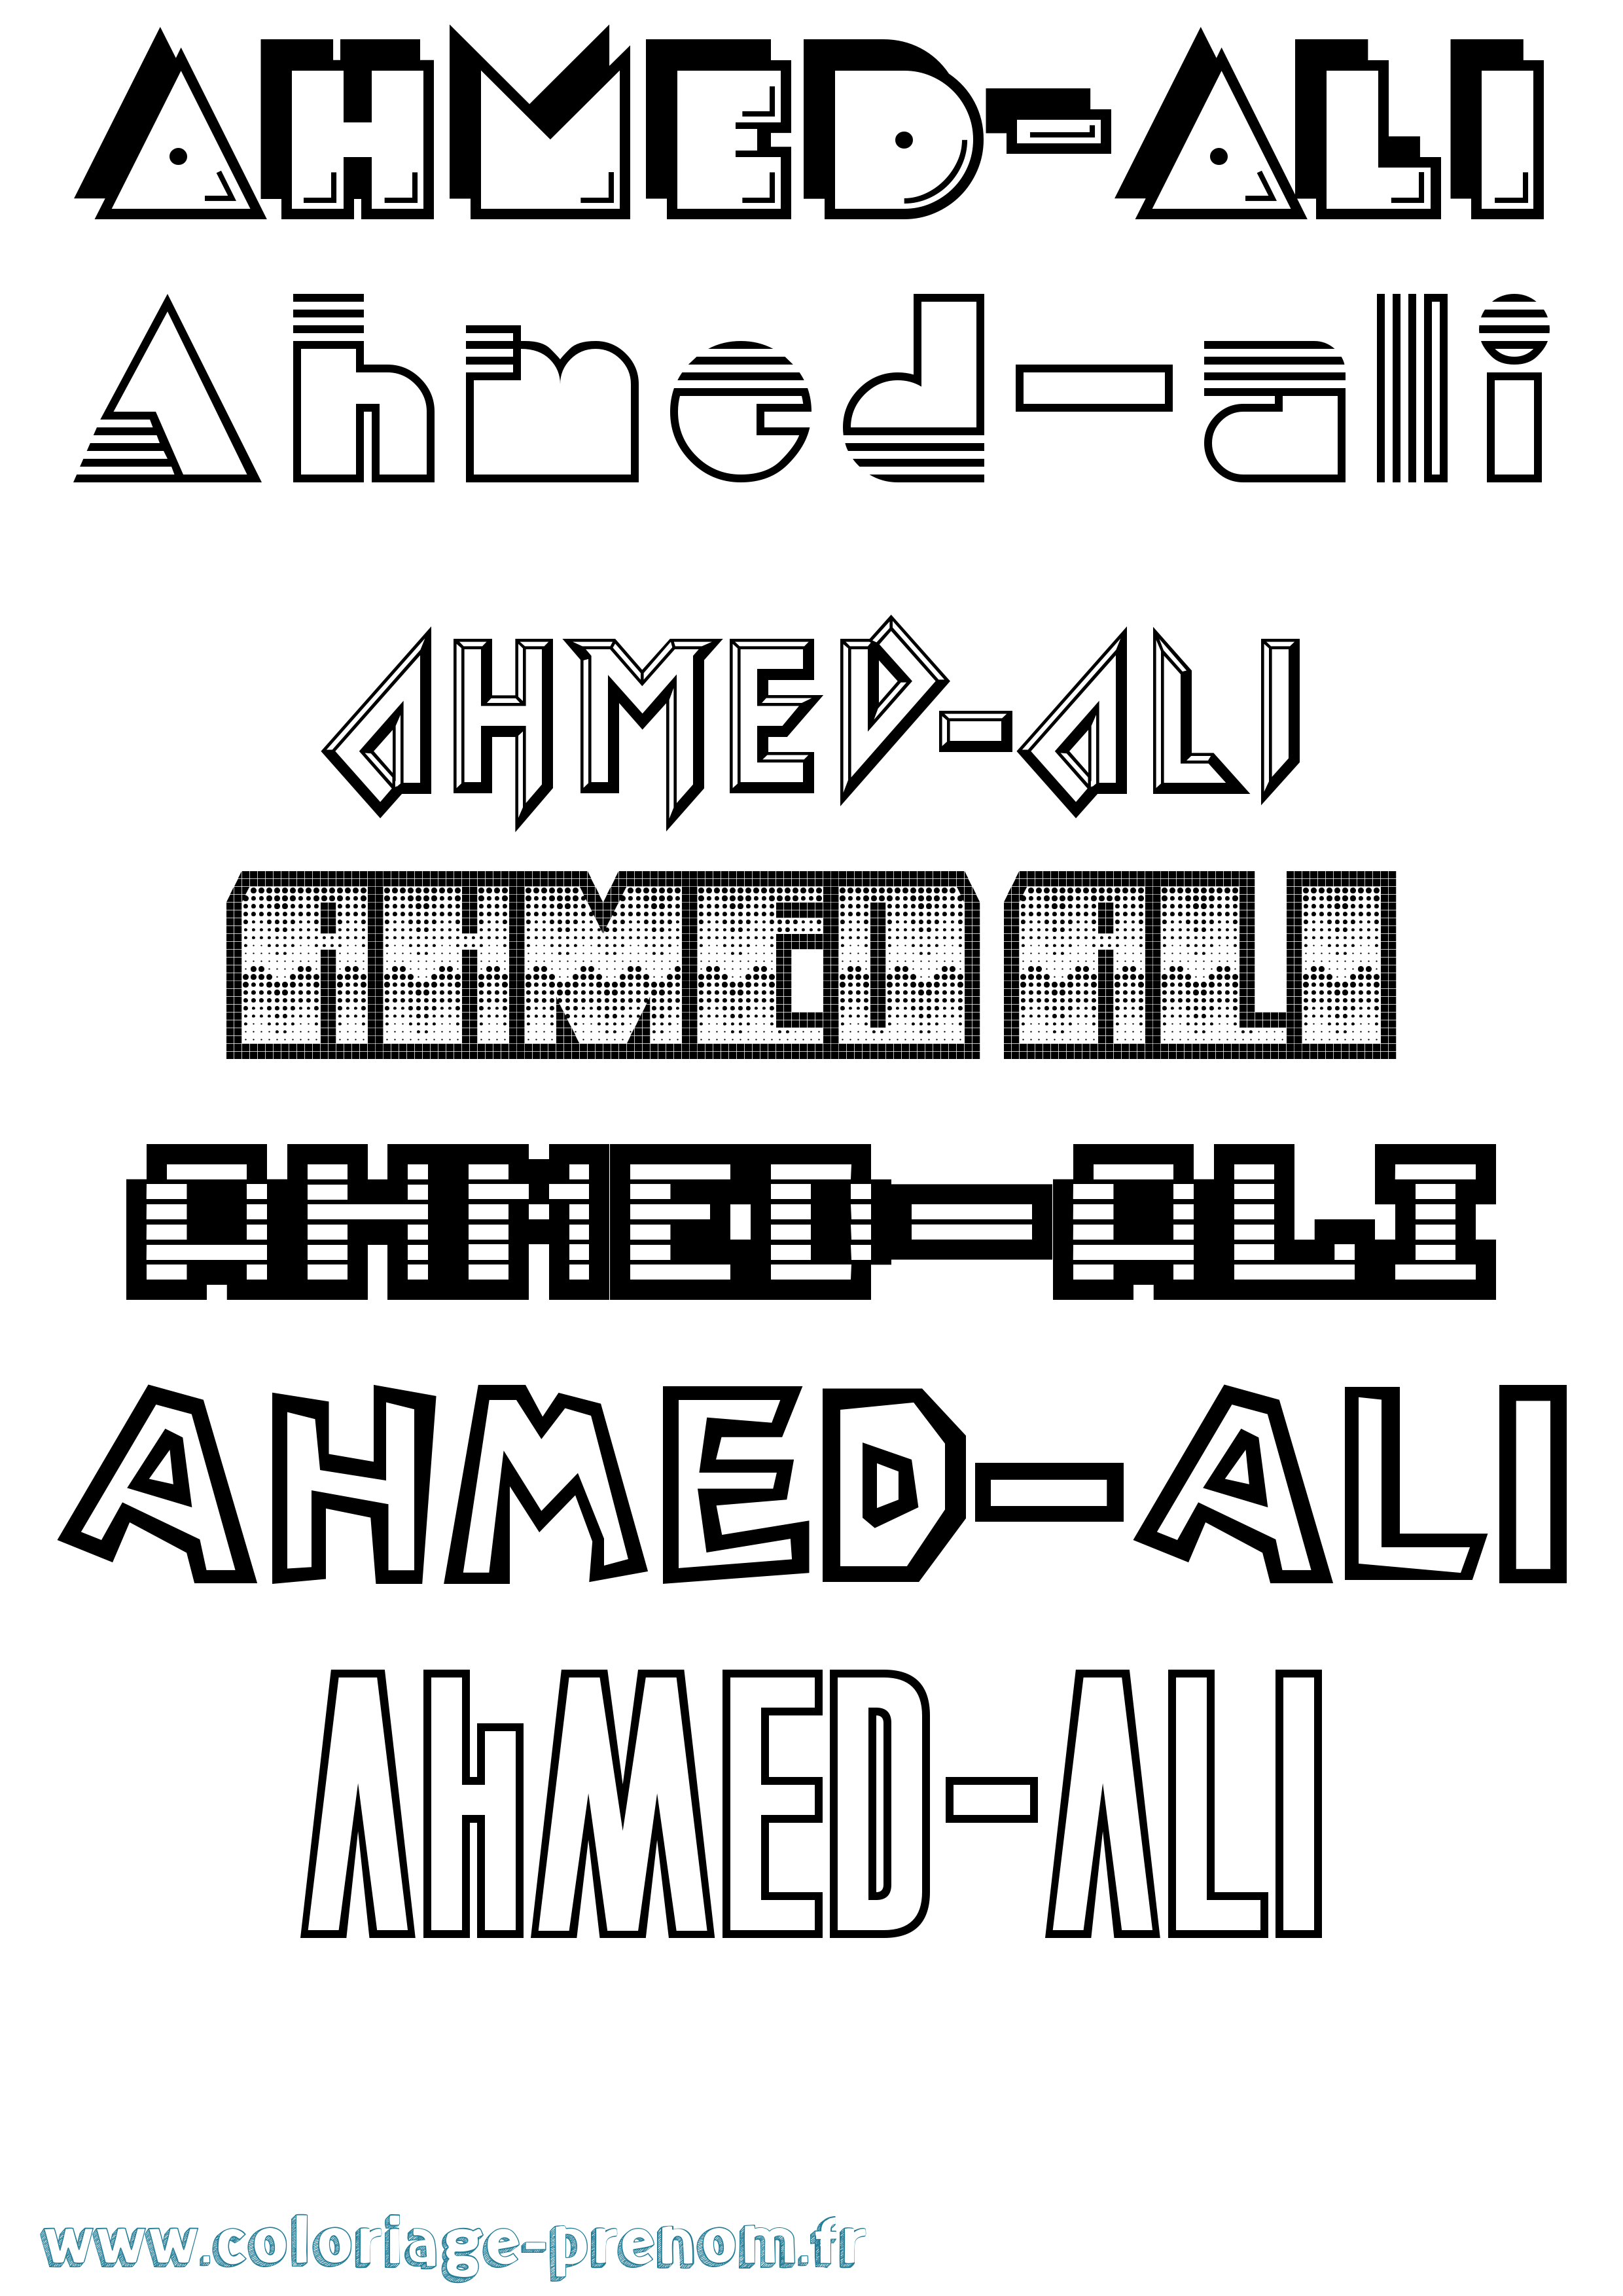 Coloriage prénom Ahmed-Ali Jeux Vidéos